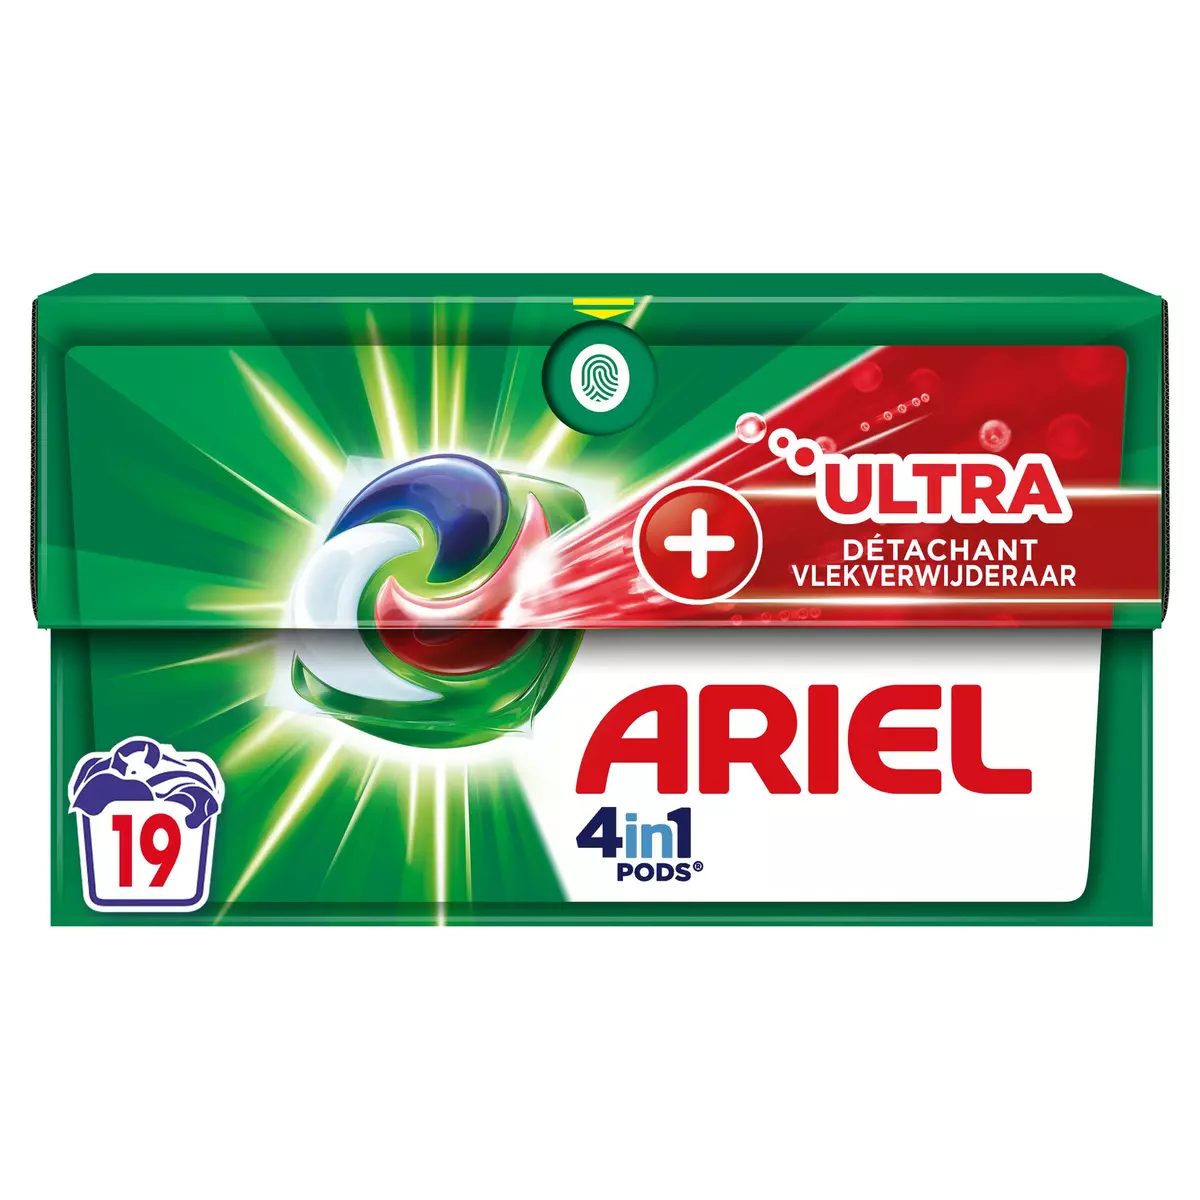 ARIEL Pods lessive capsules 4en1 ultra détachant 19 capsules